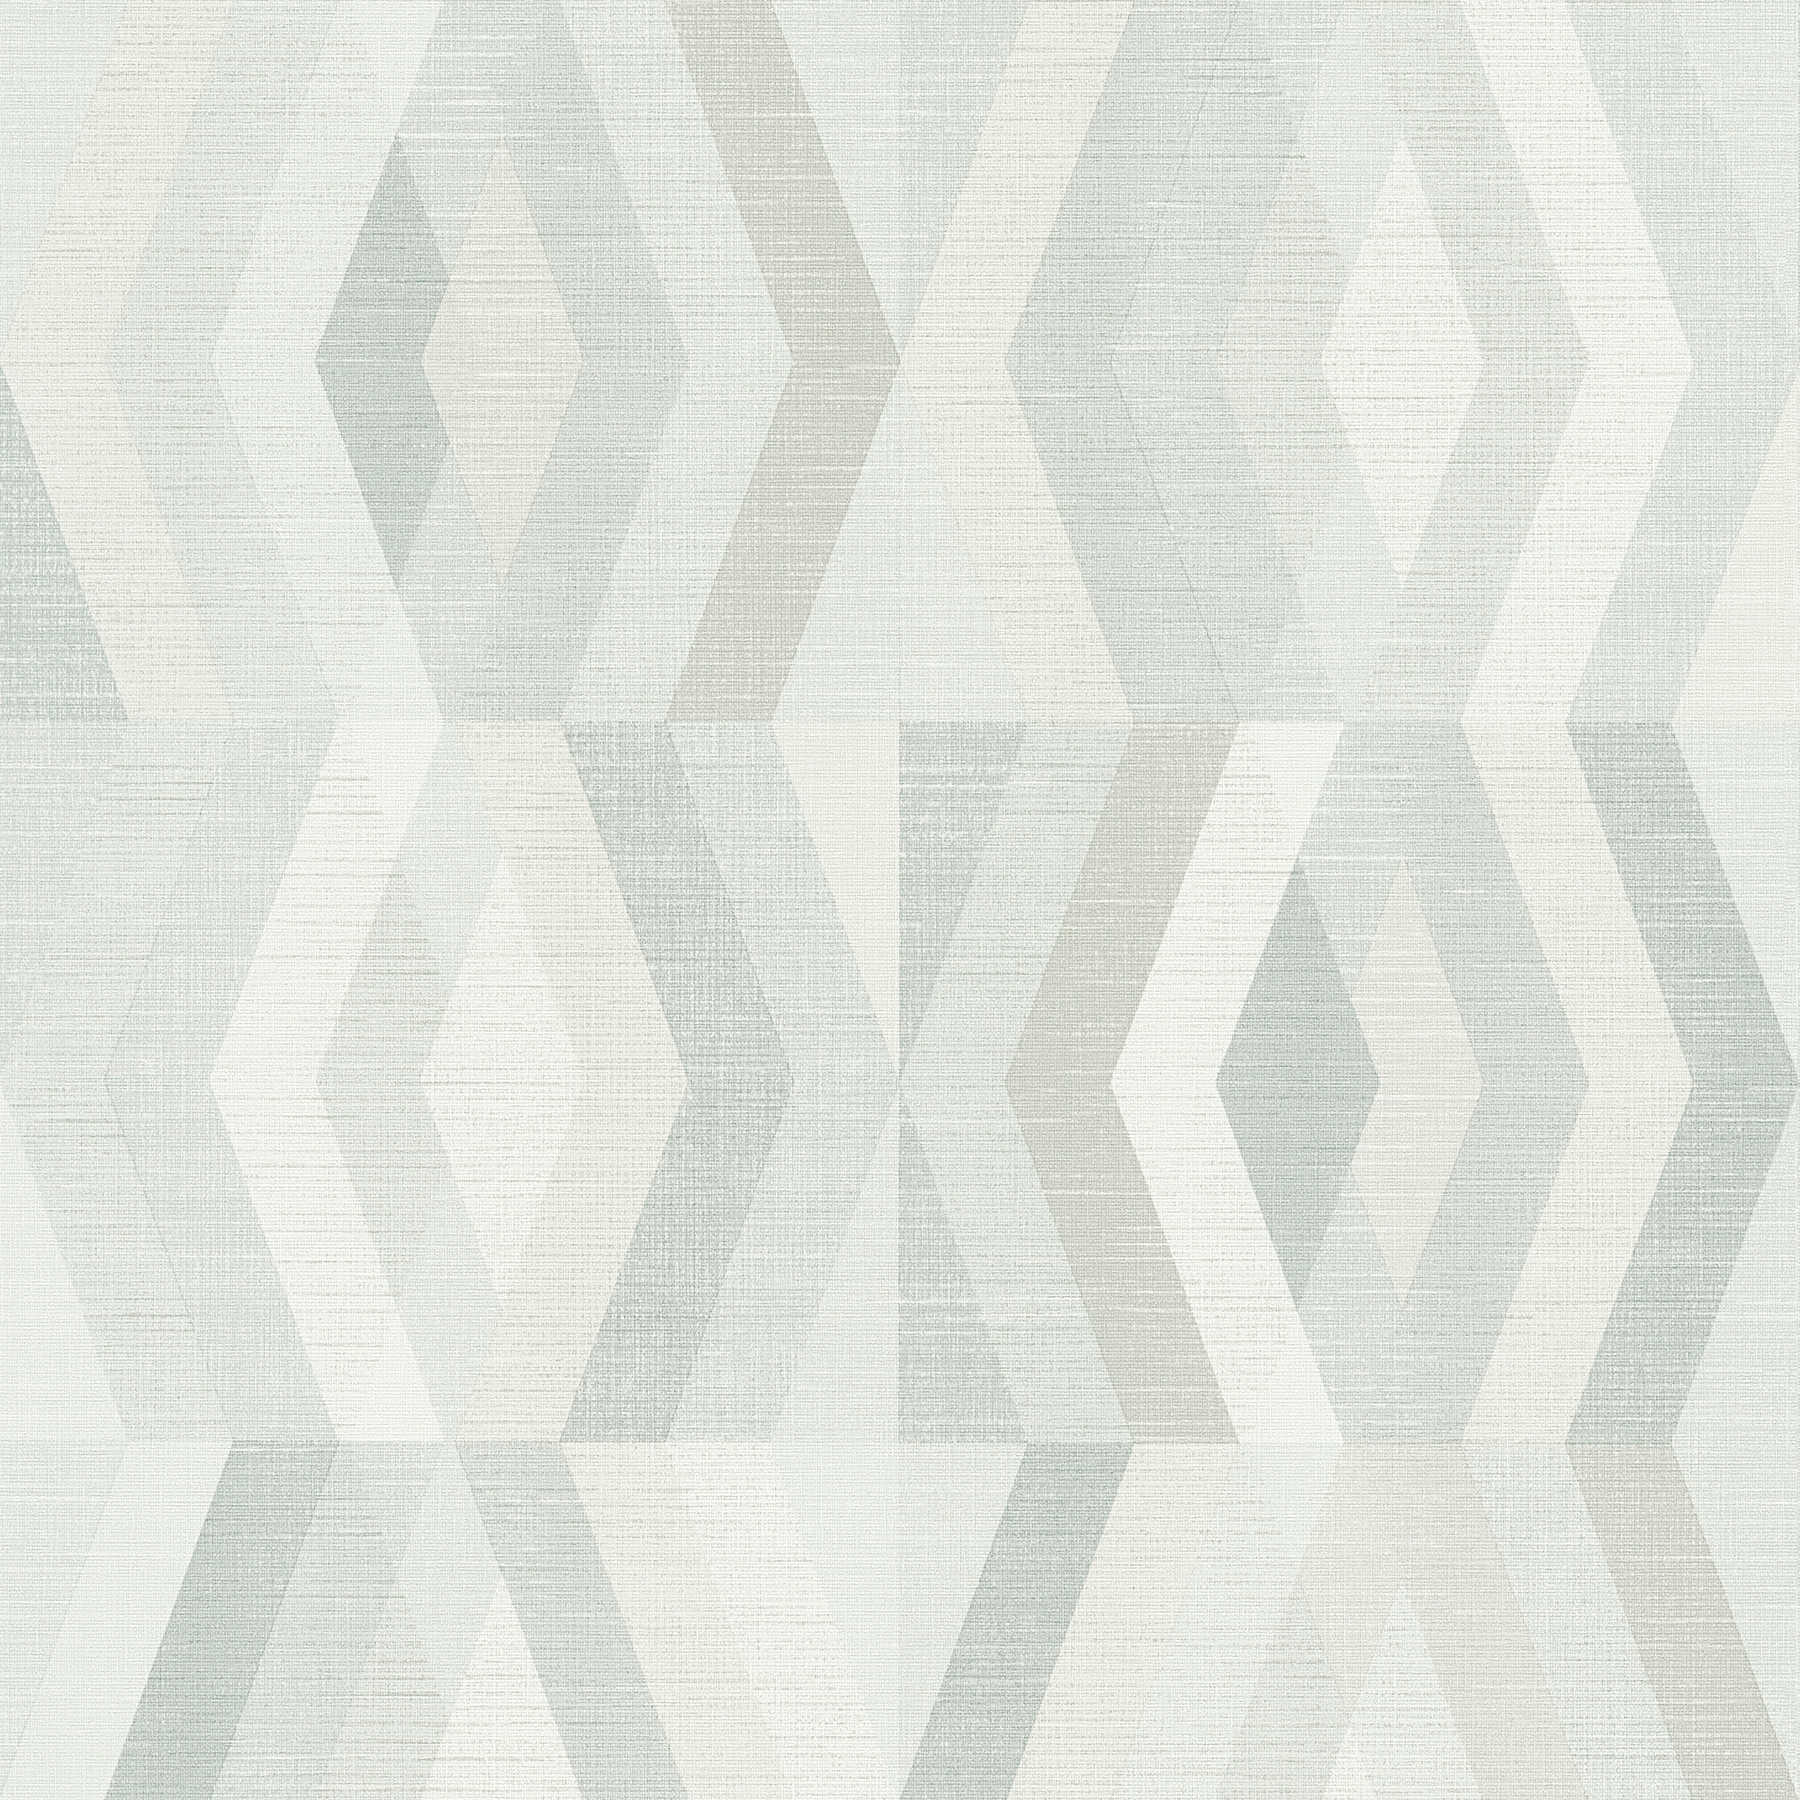 Wallpaper Scandinavian style with geometric pattern - grey, beige
